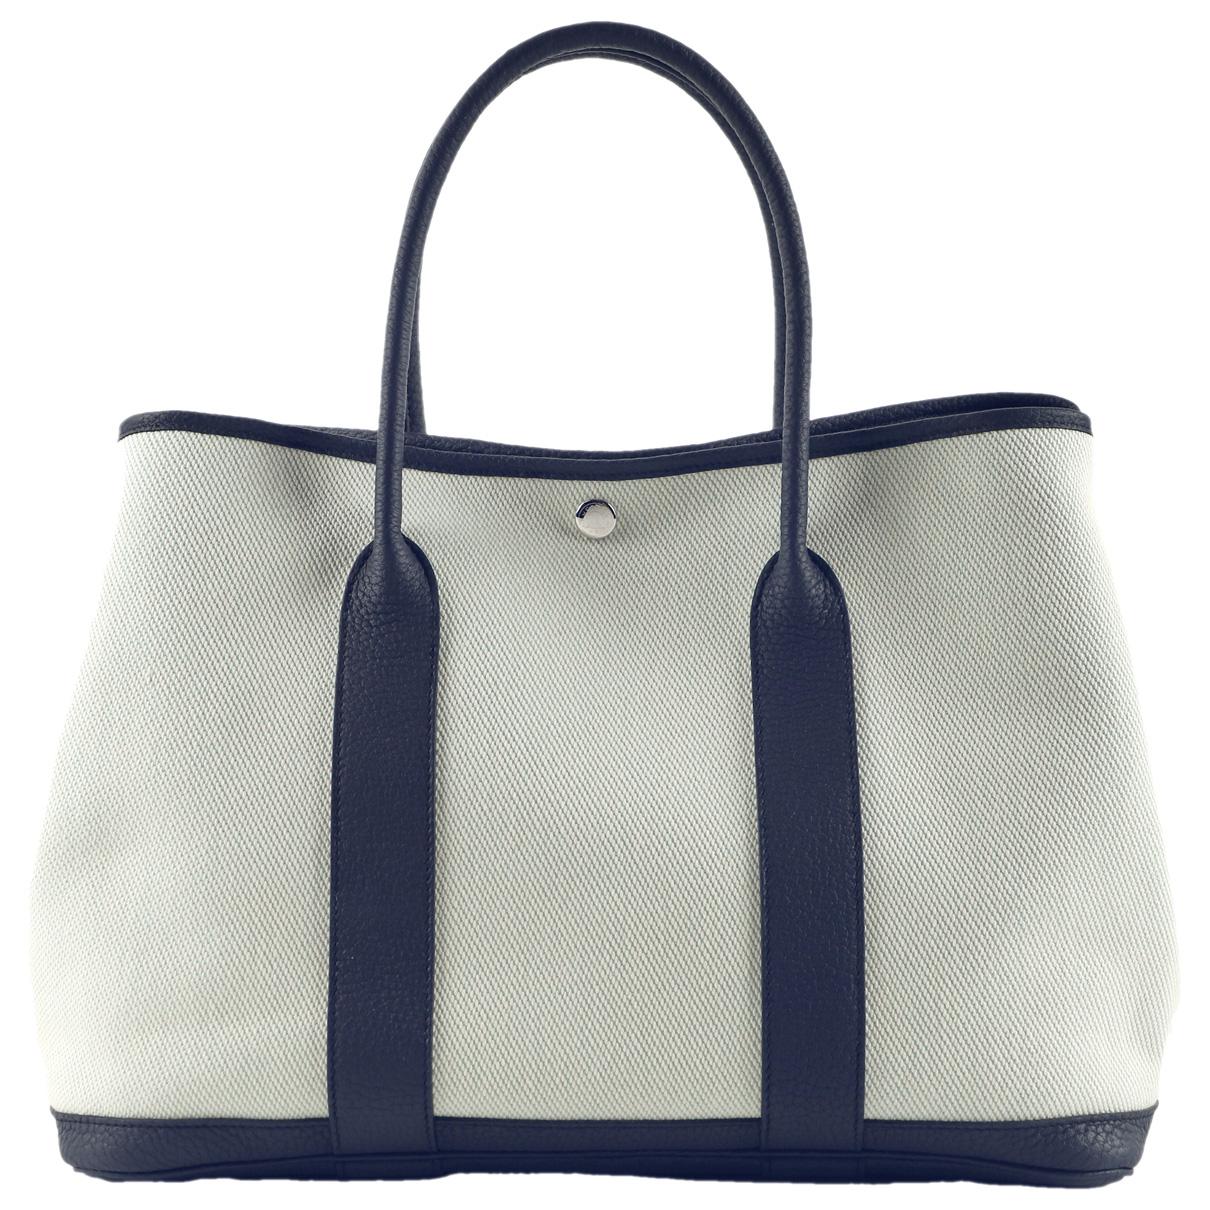 Vintage Hermès bags - Our luxury second-hand/used Hermès bags